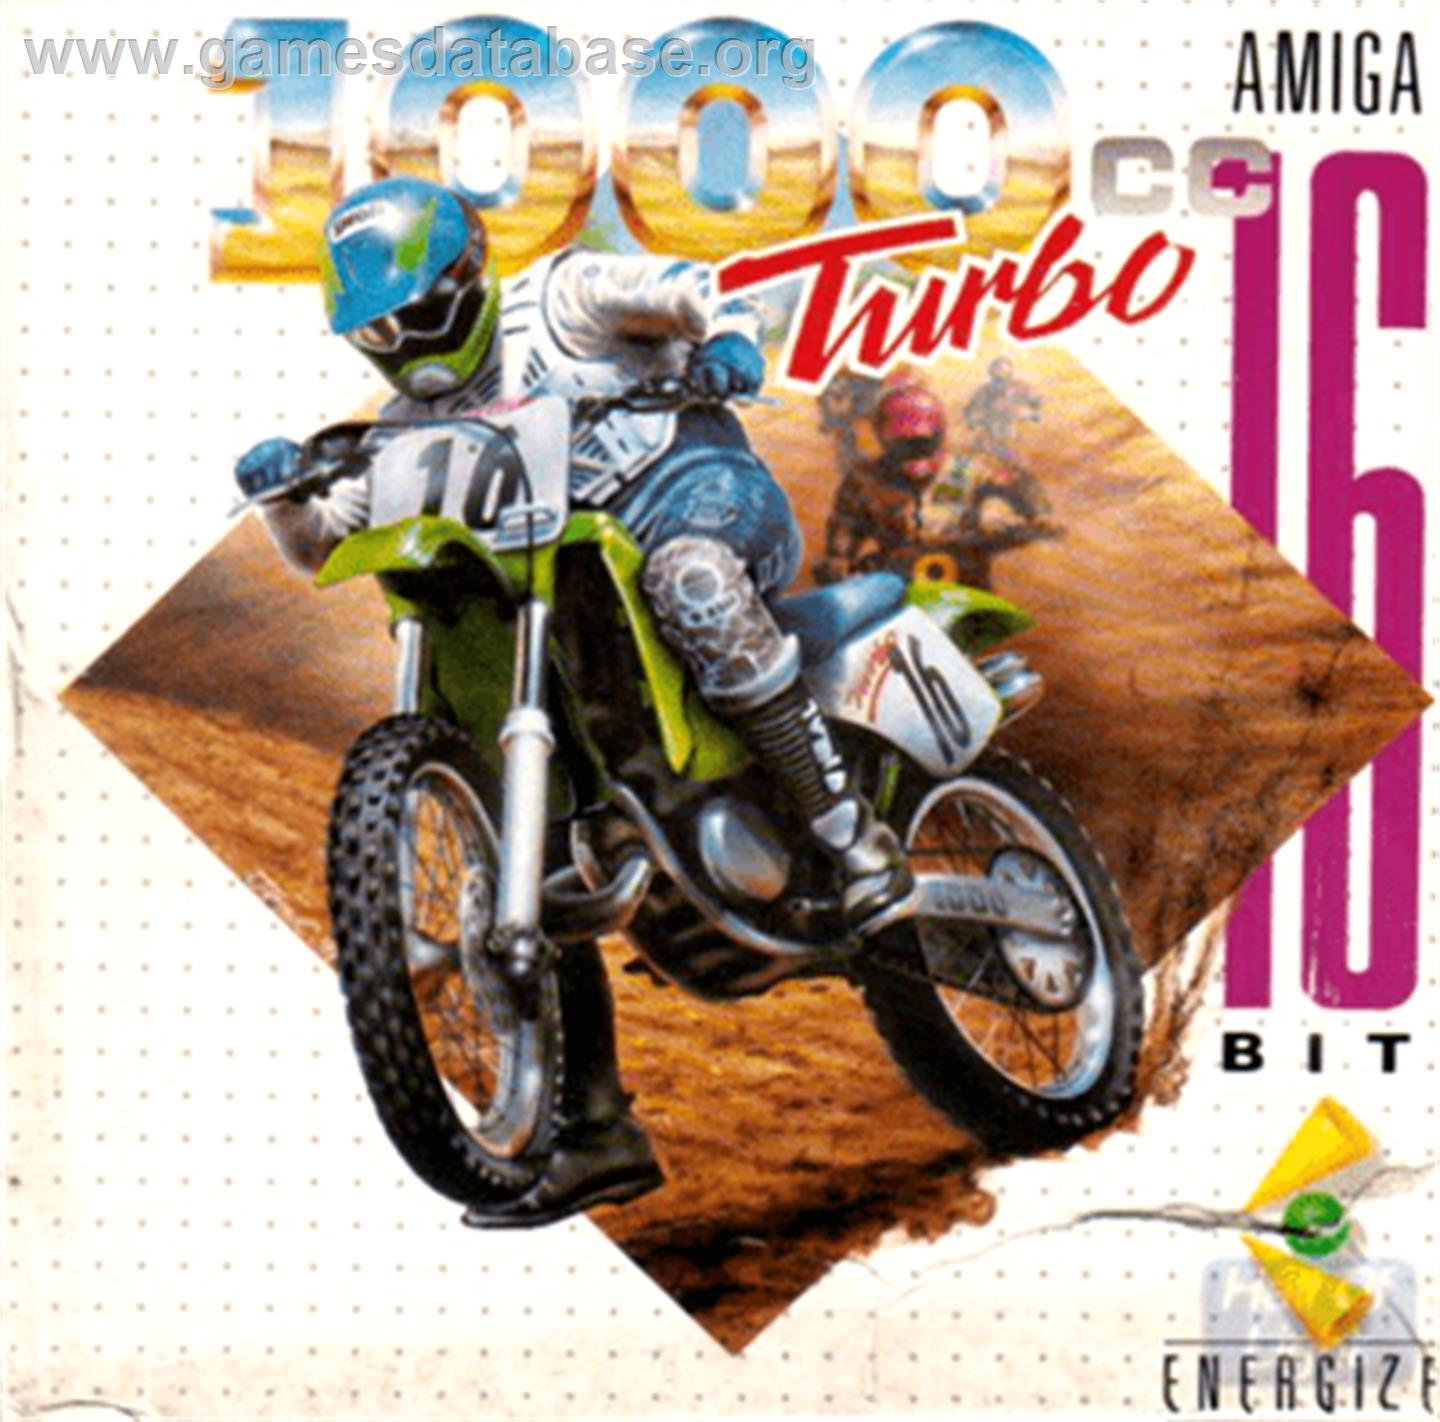 1000cc Turbo - Commodore Amiga - Artwork - Box